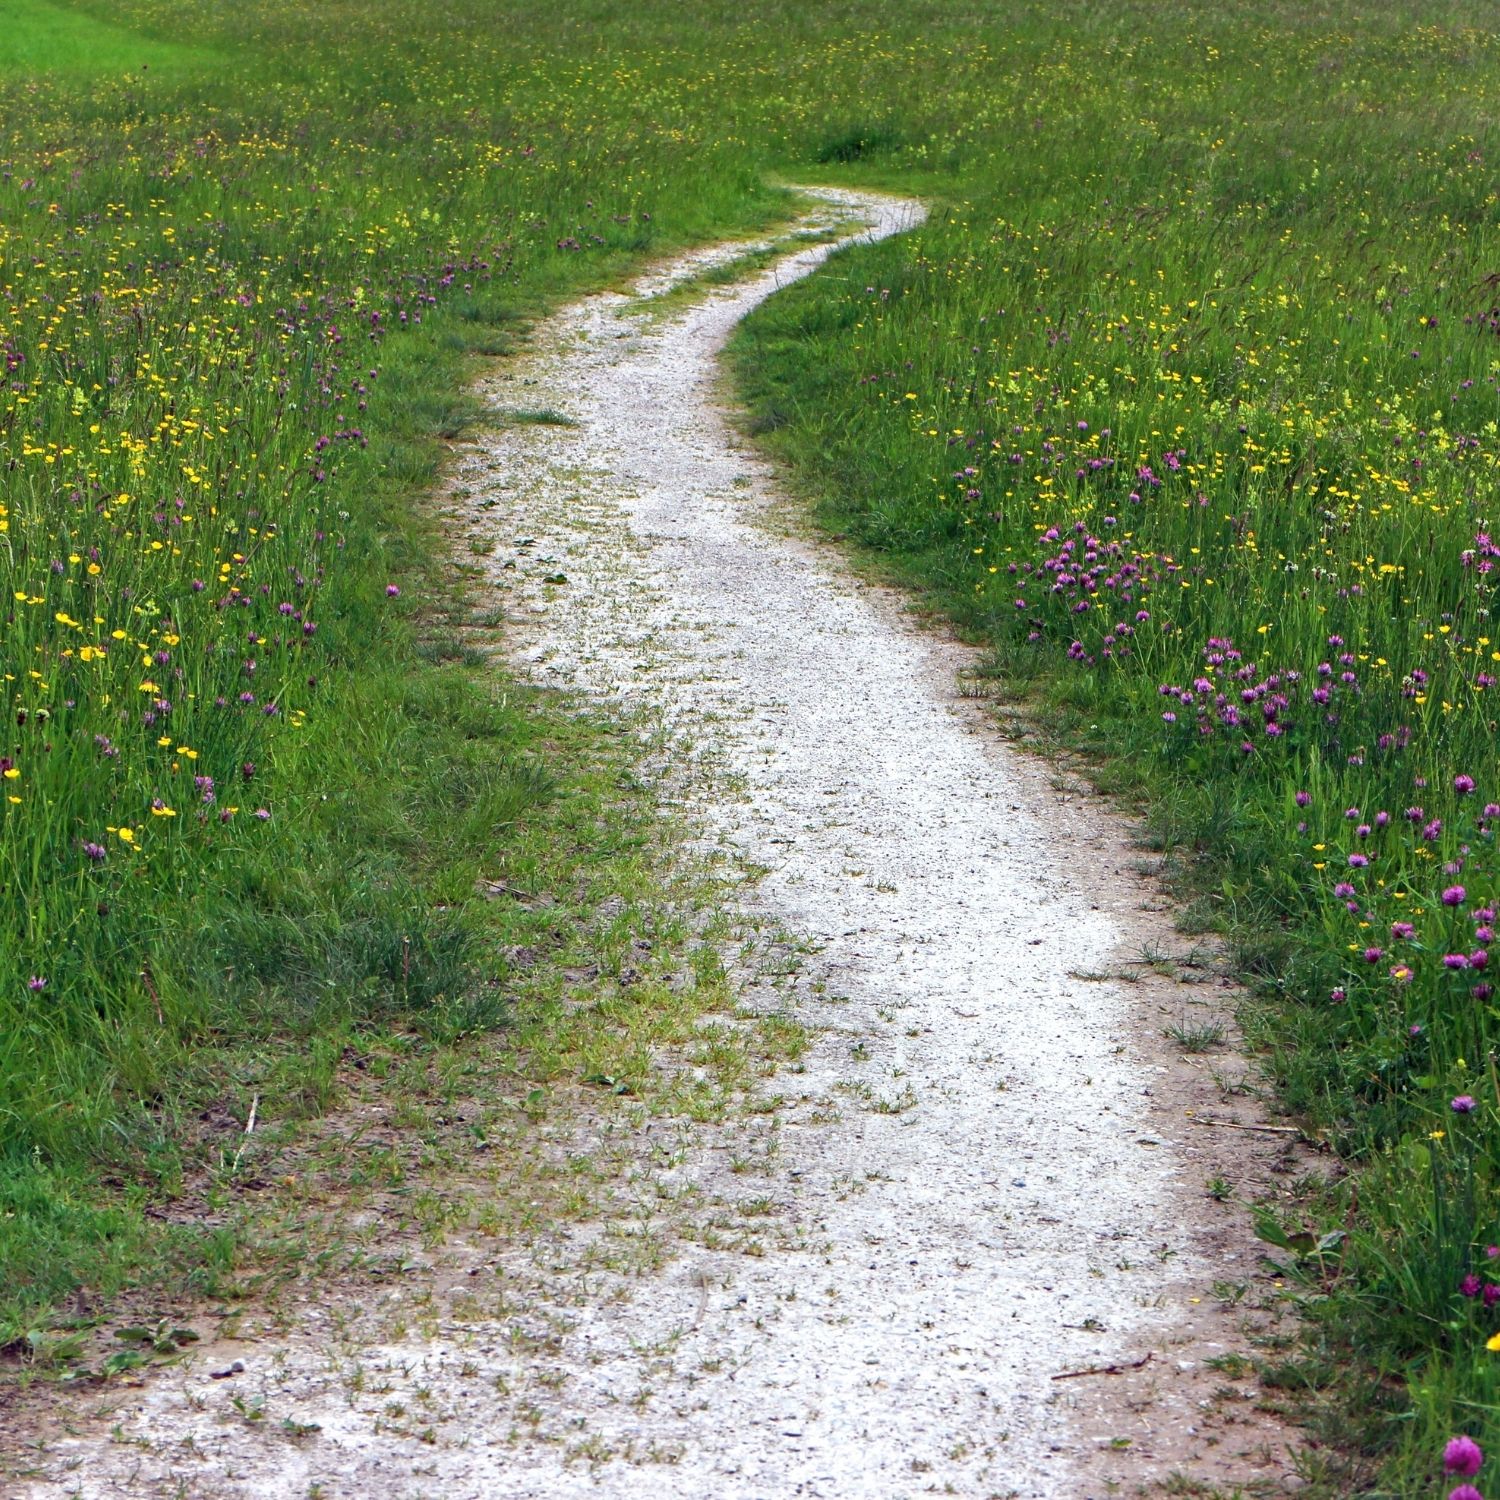 dirt path through a grassy field